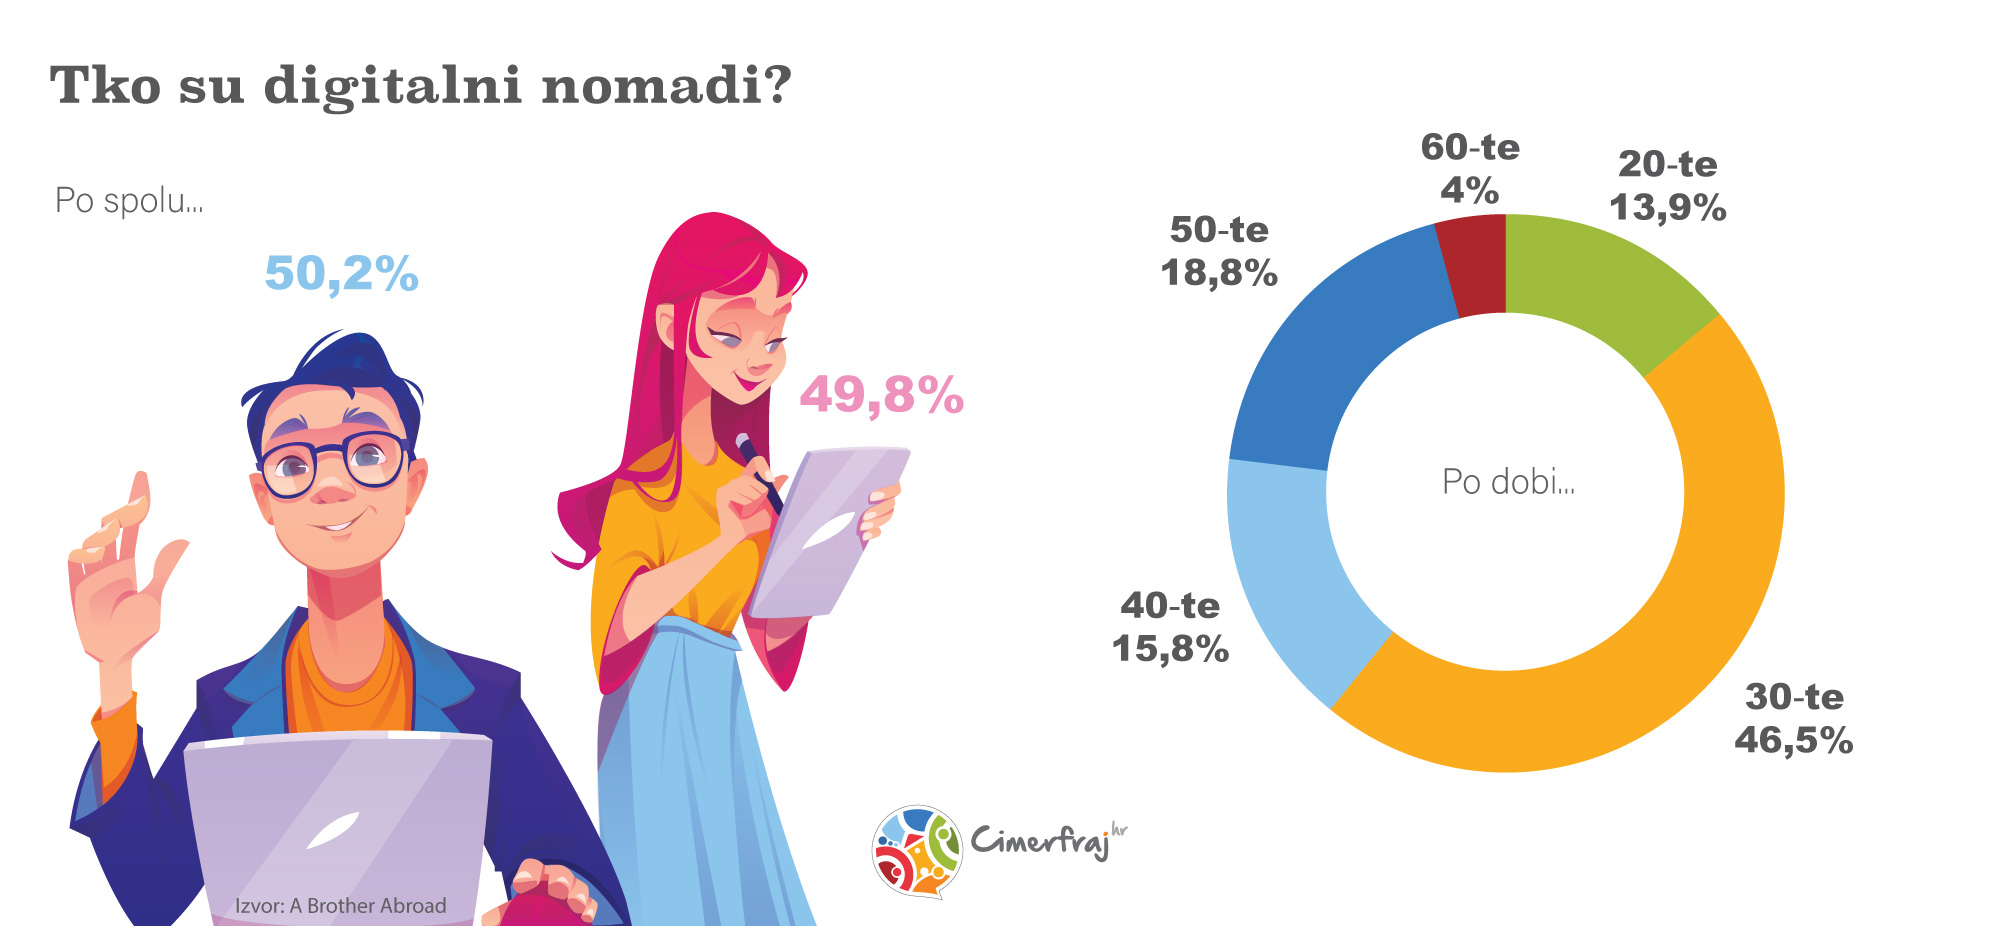 Tko su digitalni nomadi?